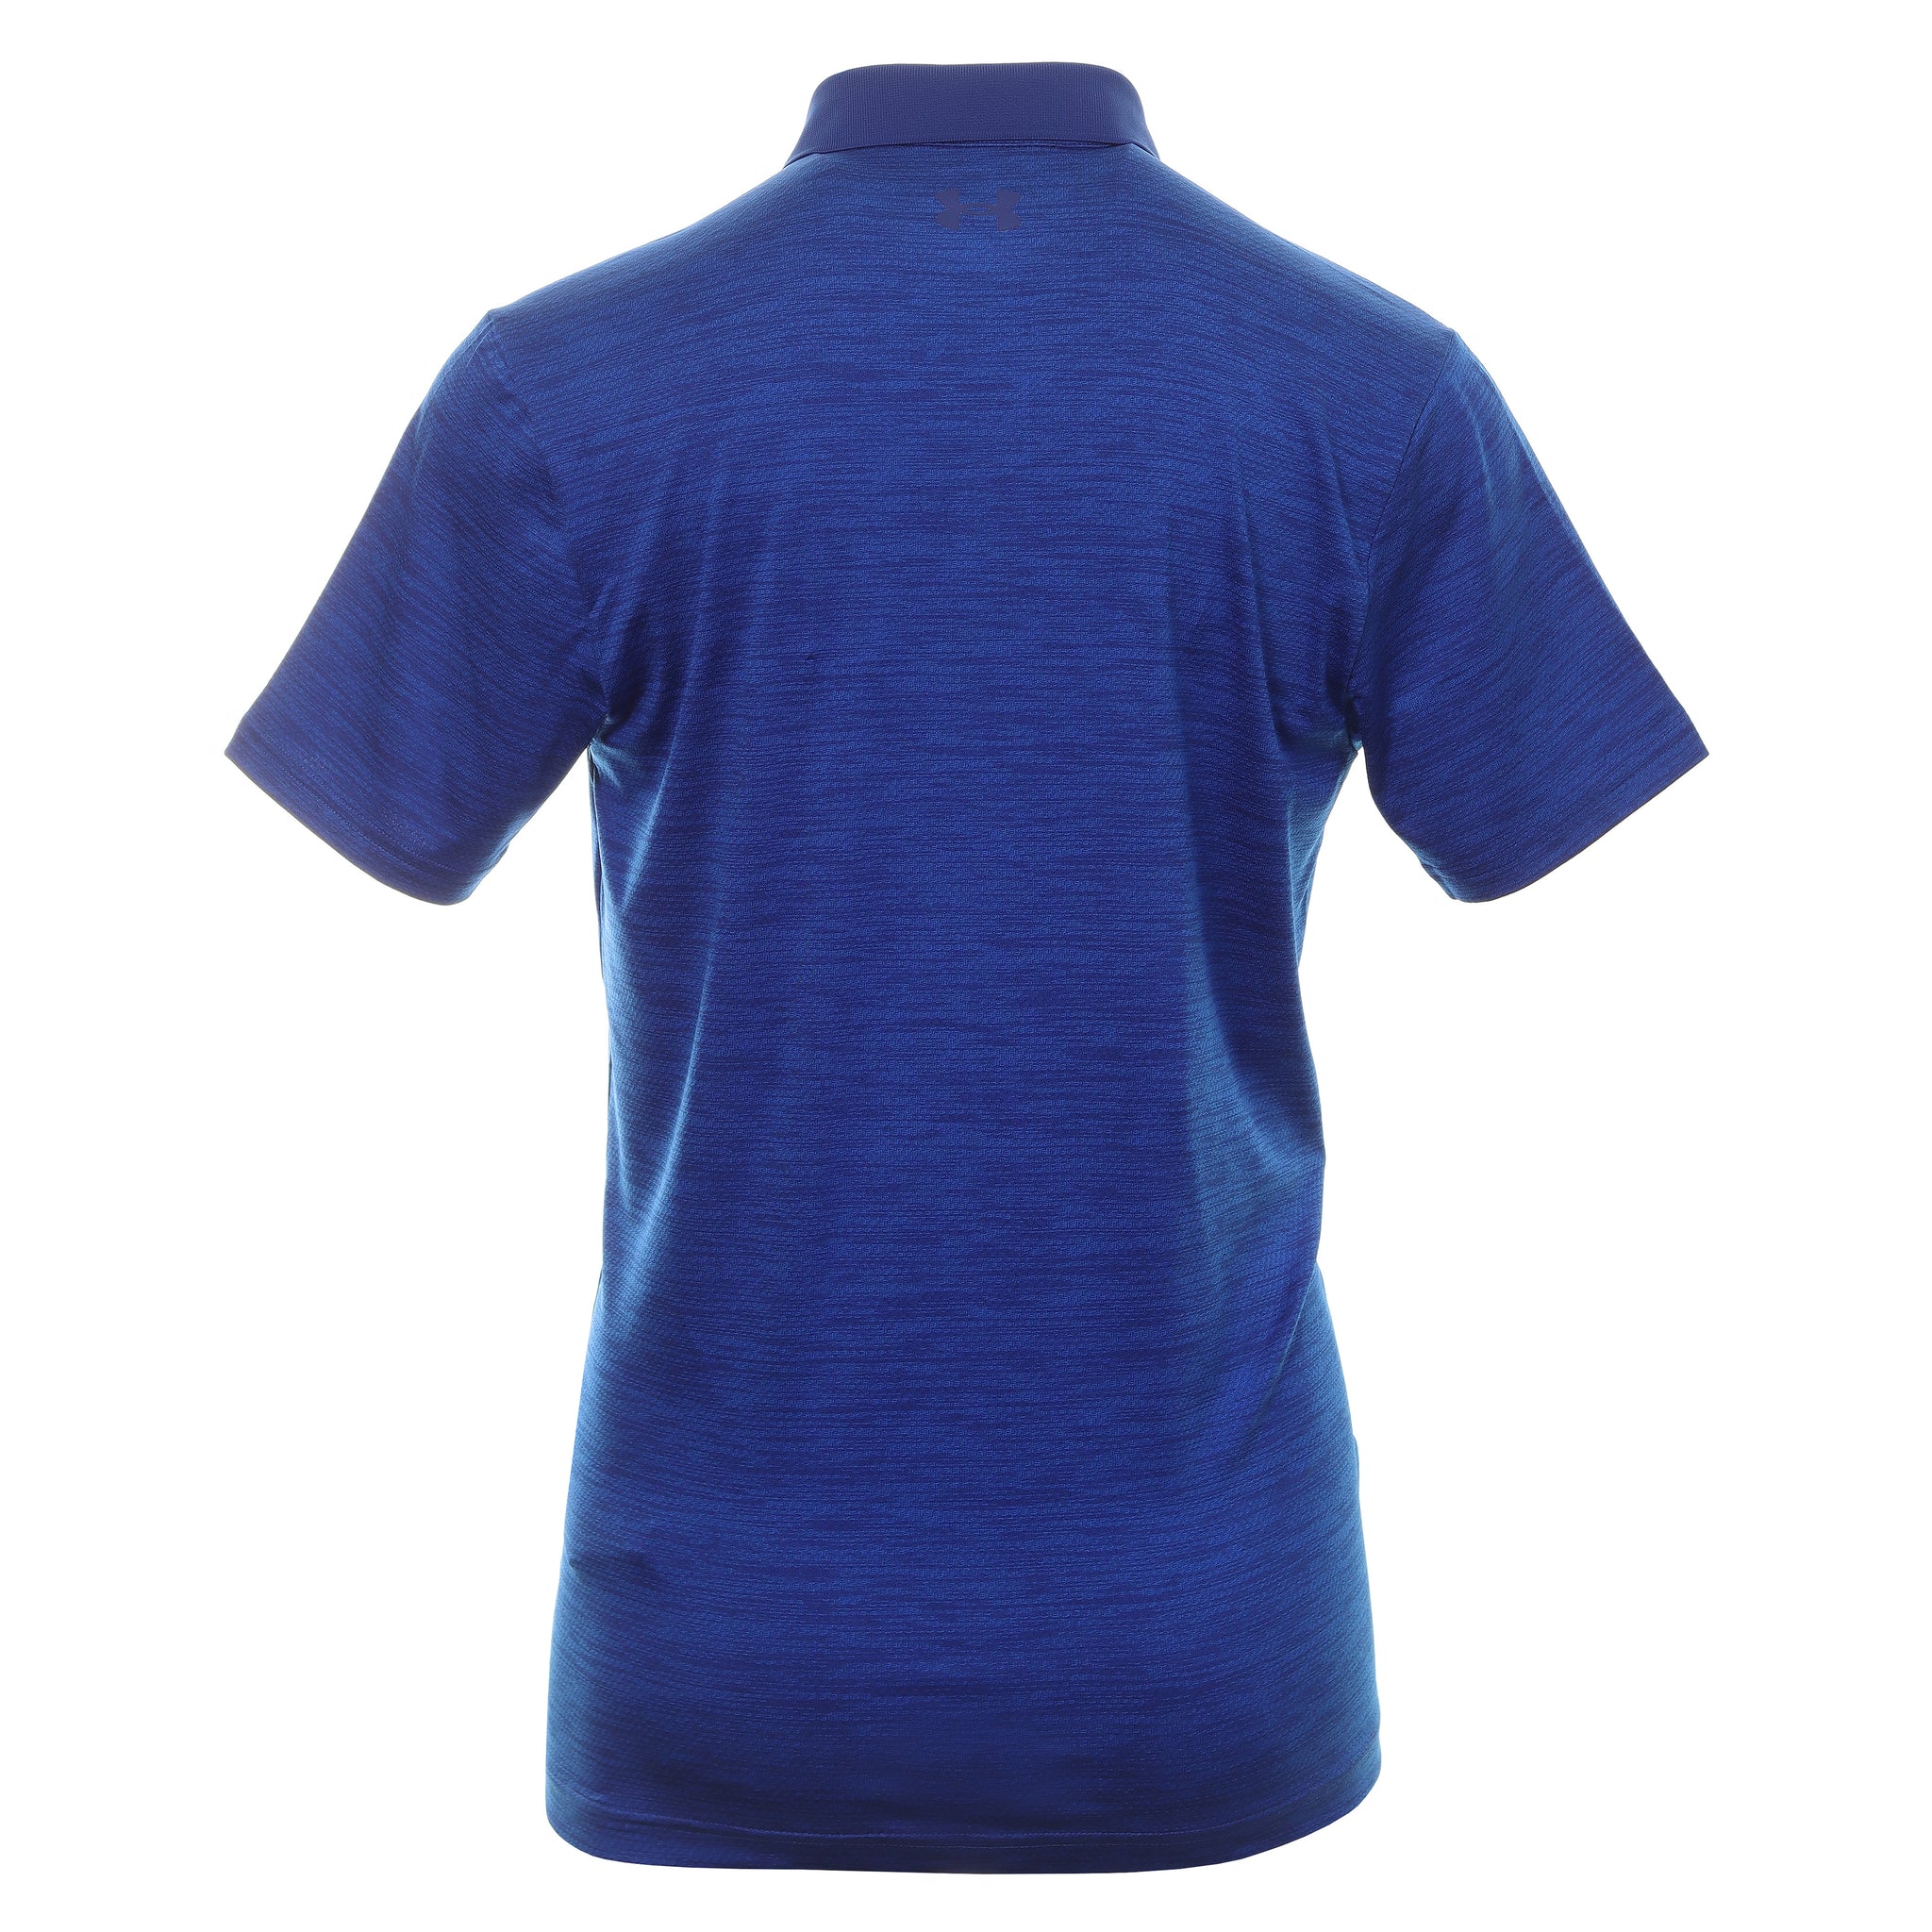 Under Armour Golf Performance 2.0 Shirt 1342080 Bauhaus Blue 456